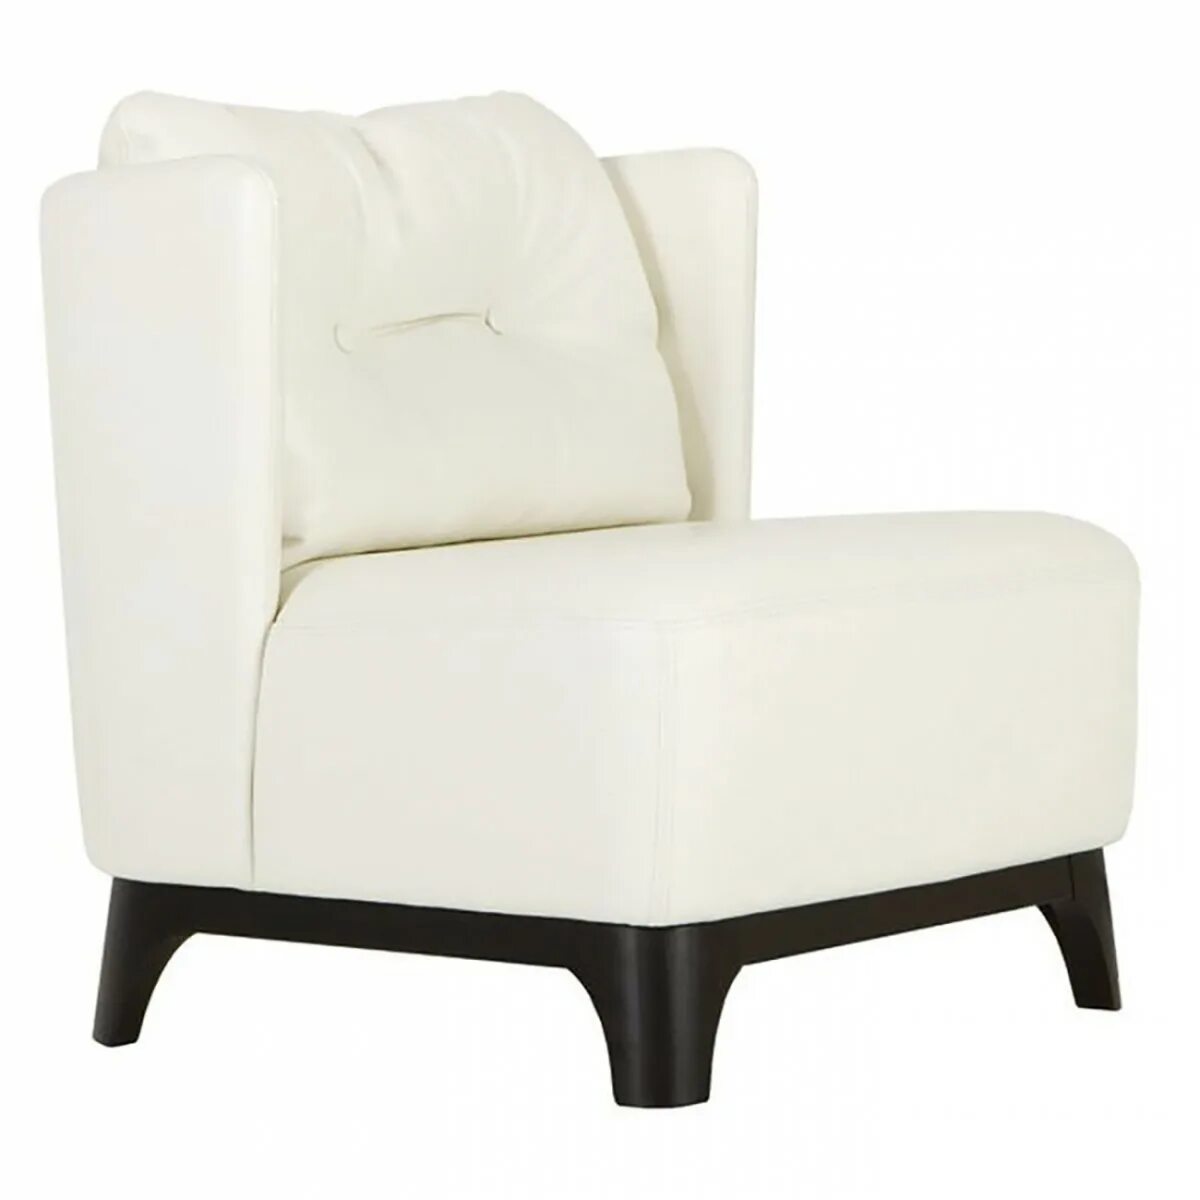 Кресло Альма 2. Кресло Карнелла экокожа белый. Кресло квадратное. Кресло, цвет белый.